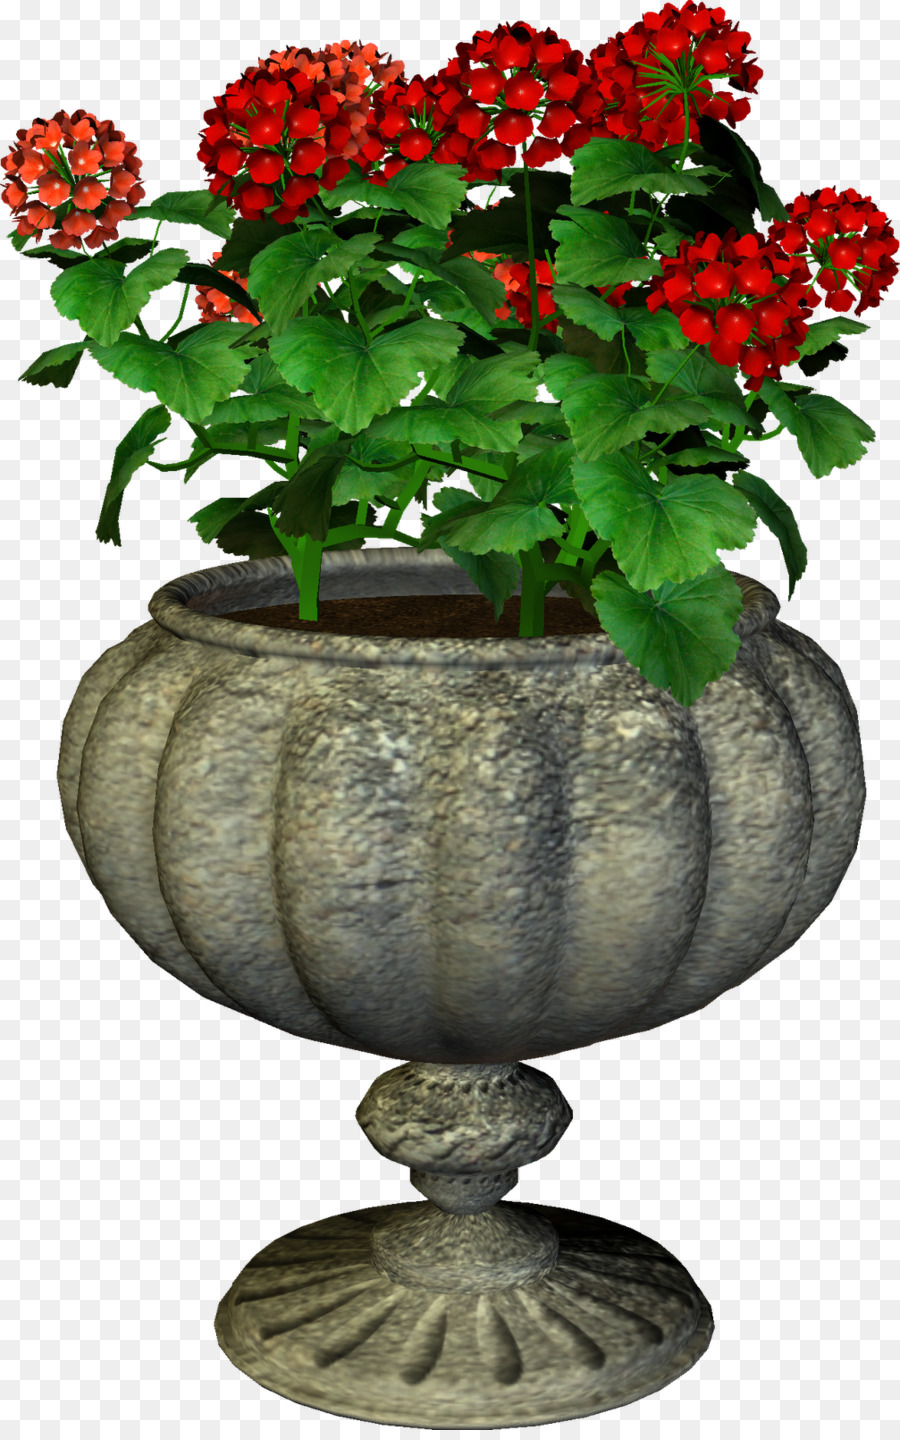 Floral design-Blumen-Vase Portable Network Graphics Russland - blume